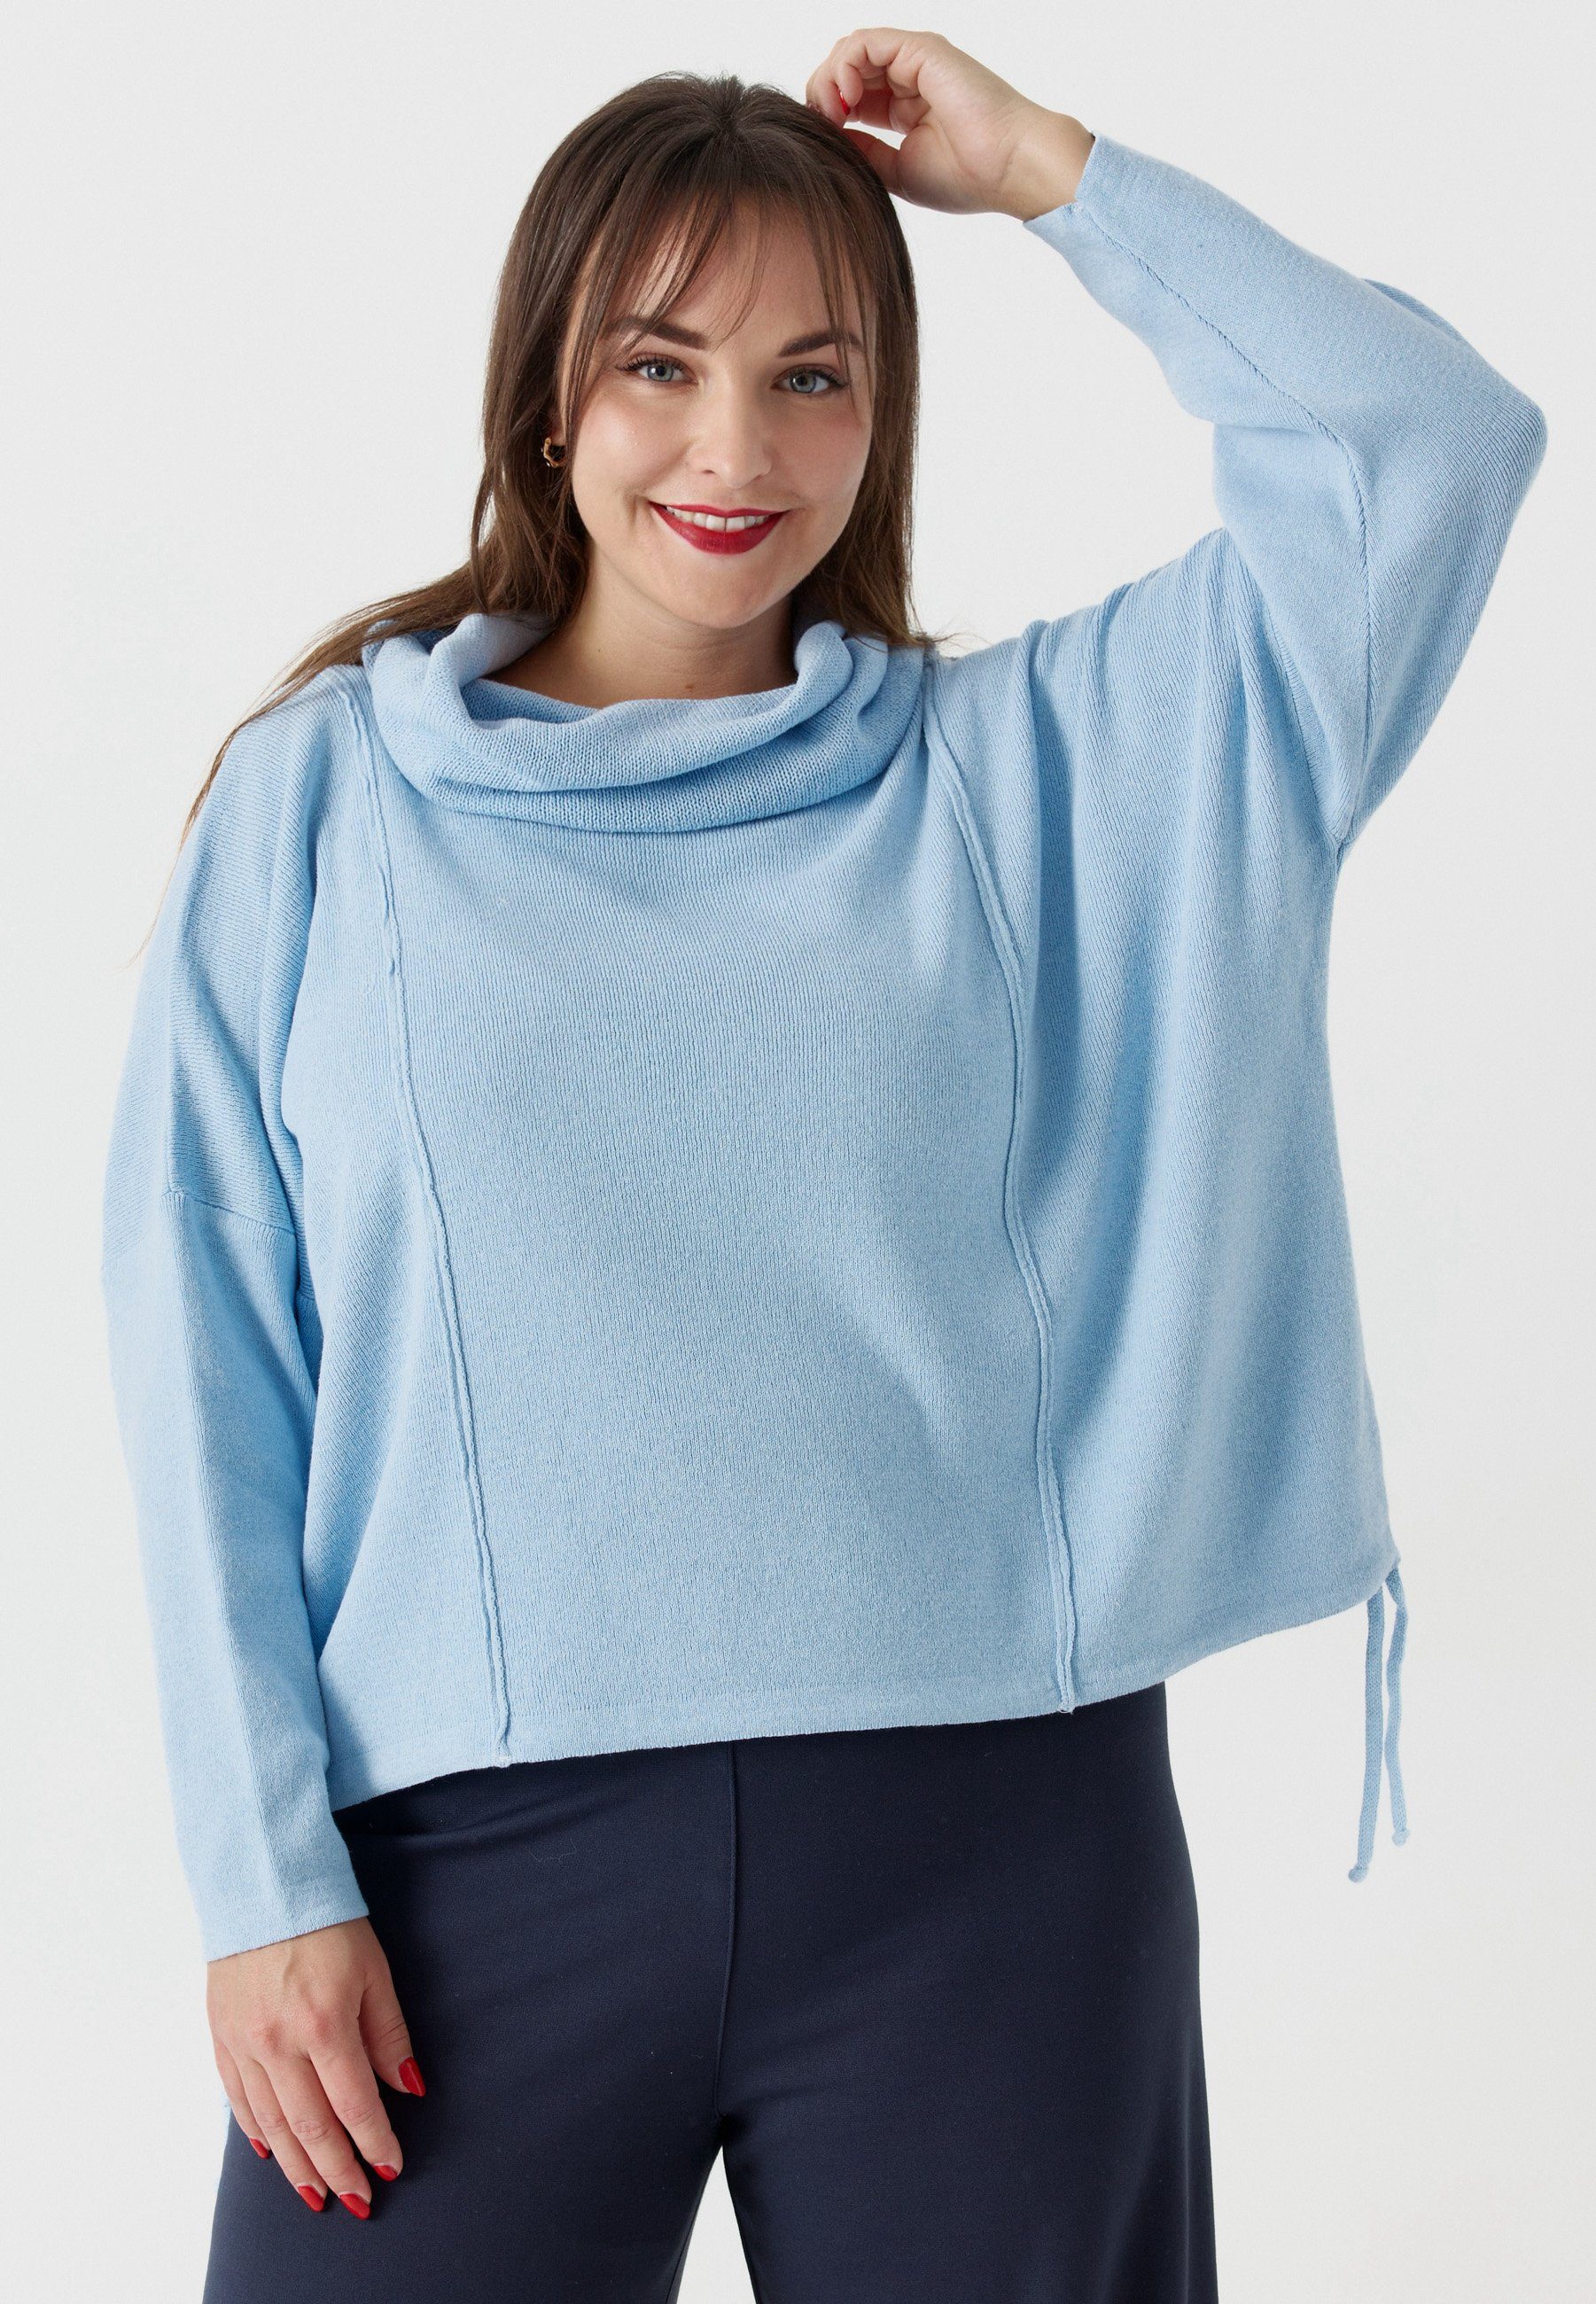 Kekoo Tunikashirt Feinstrick Pullover mit Schalkragen aus reiner Baumwolle 'Pure' Himmelblau